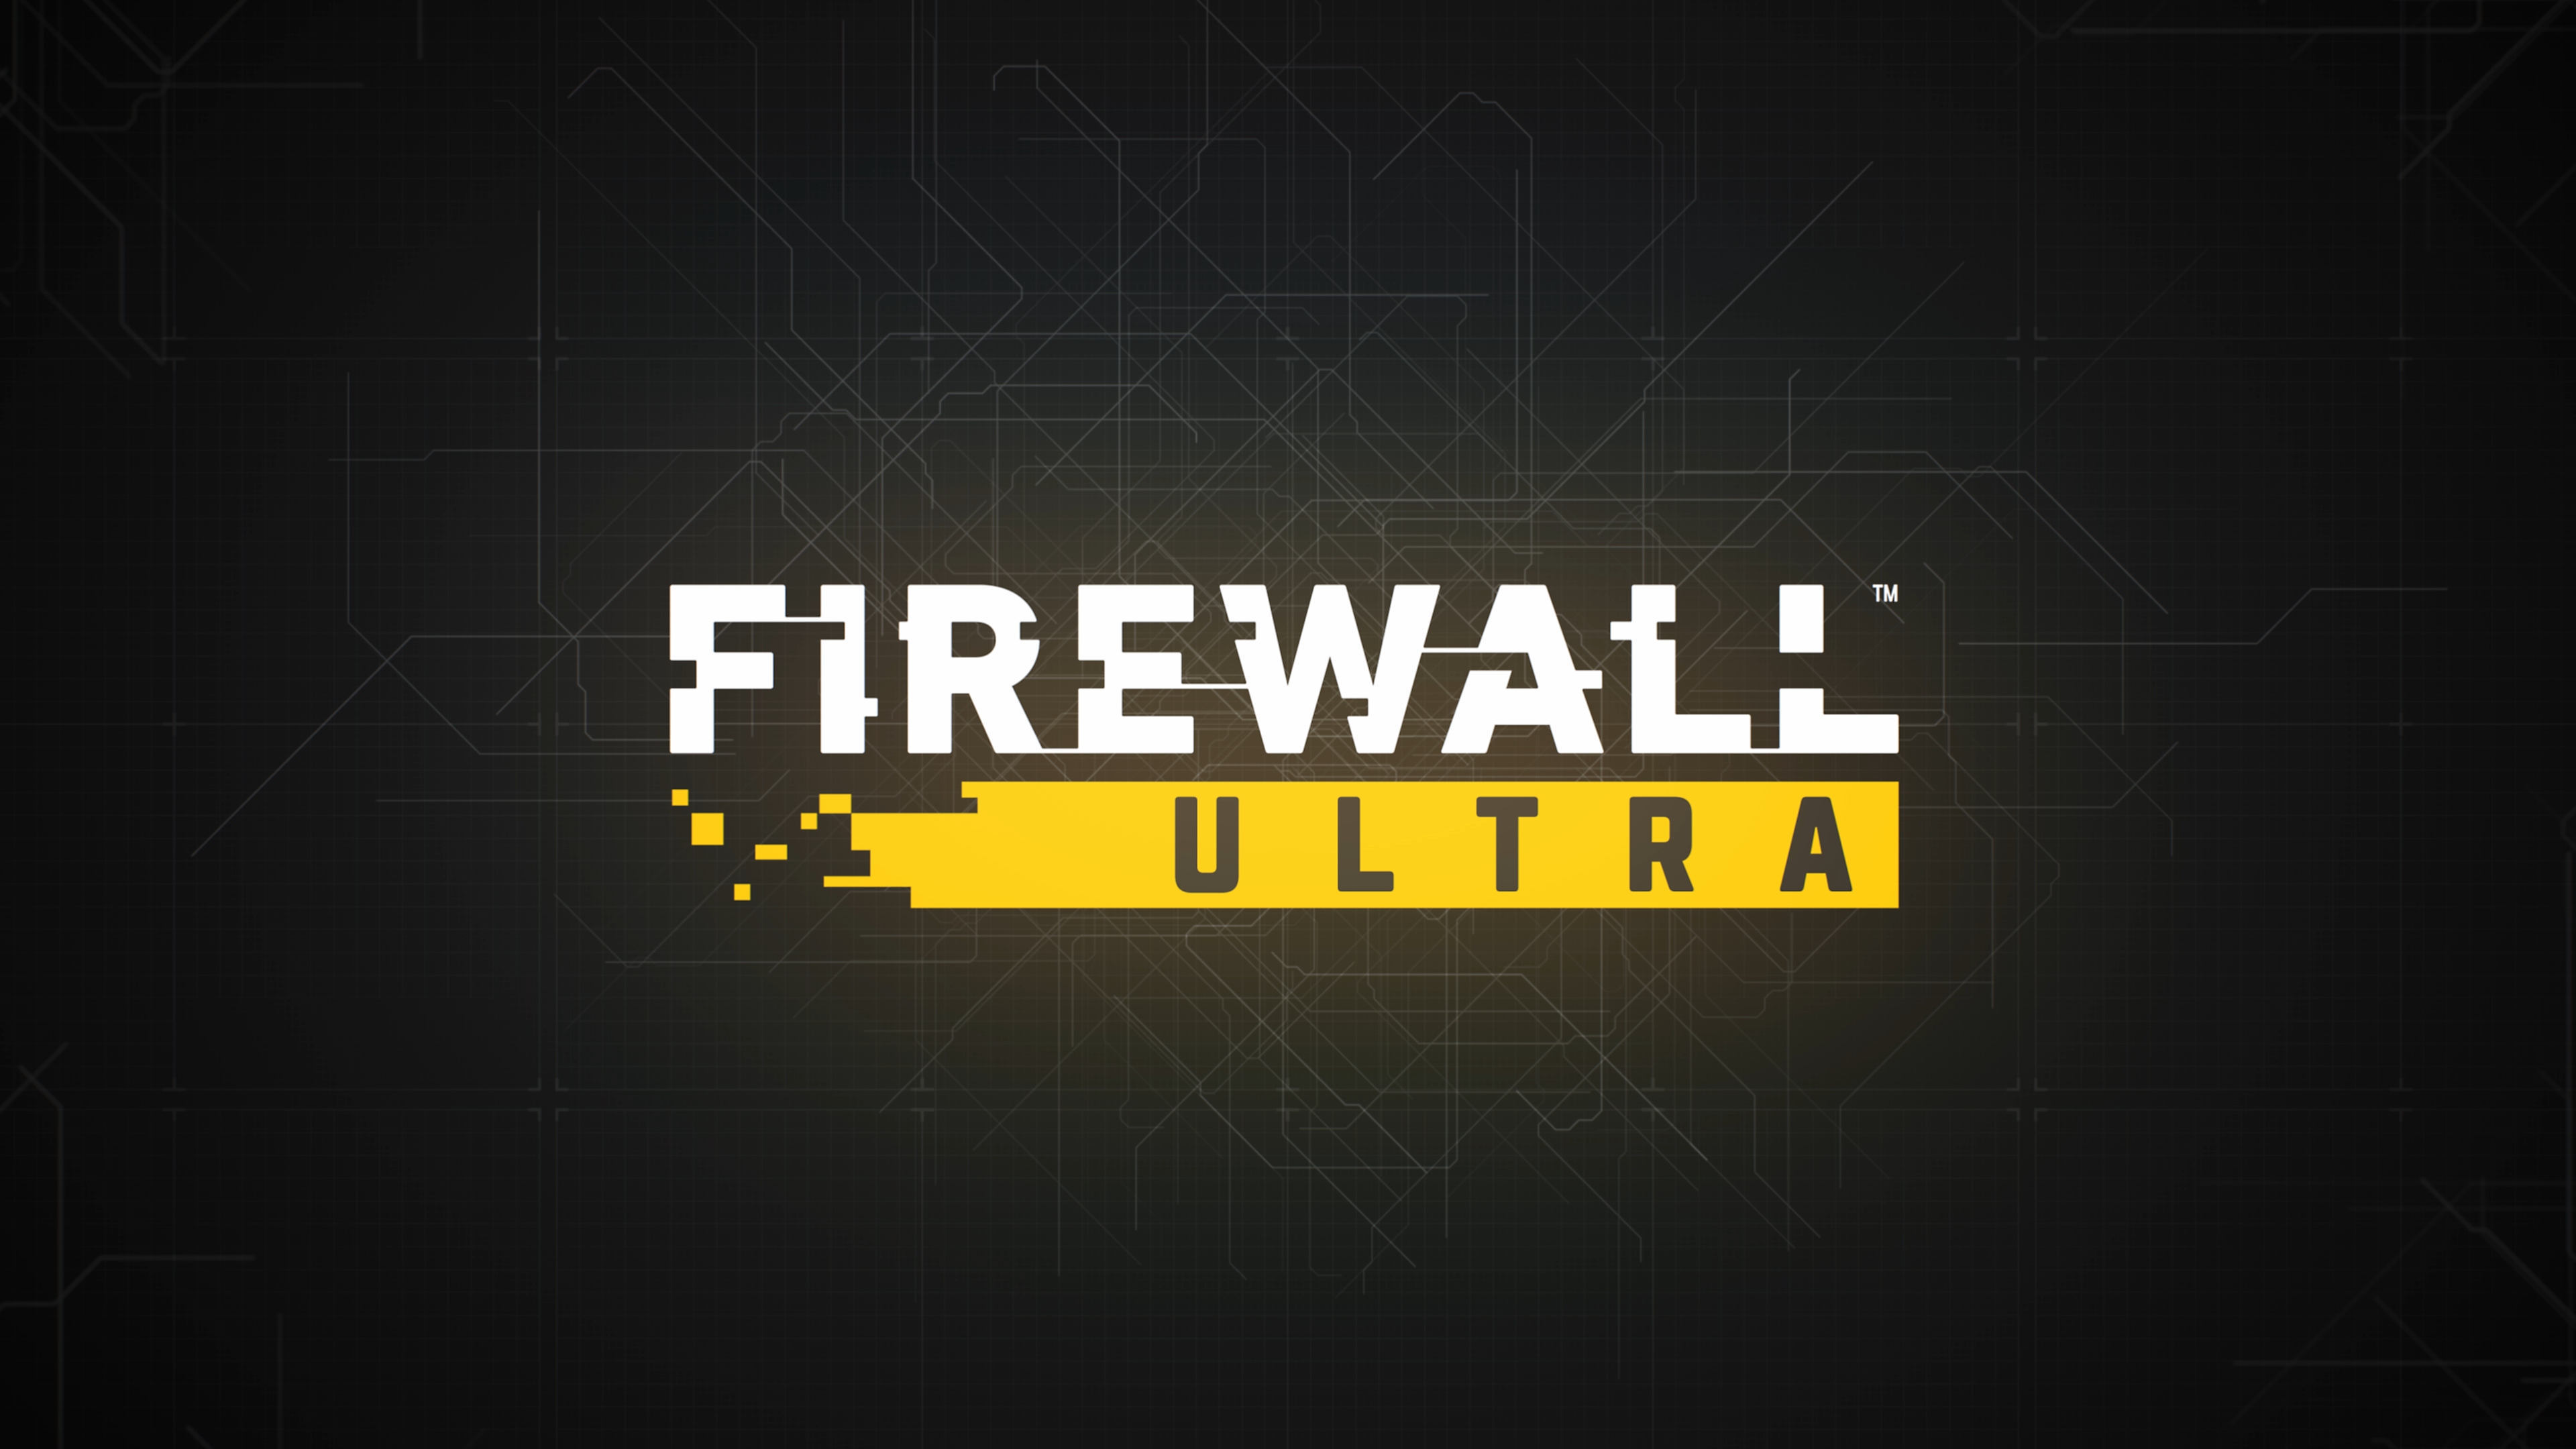 Firewall ultra – snímek obrazovky s klíčovou grafikou